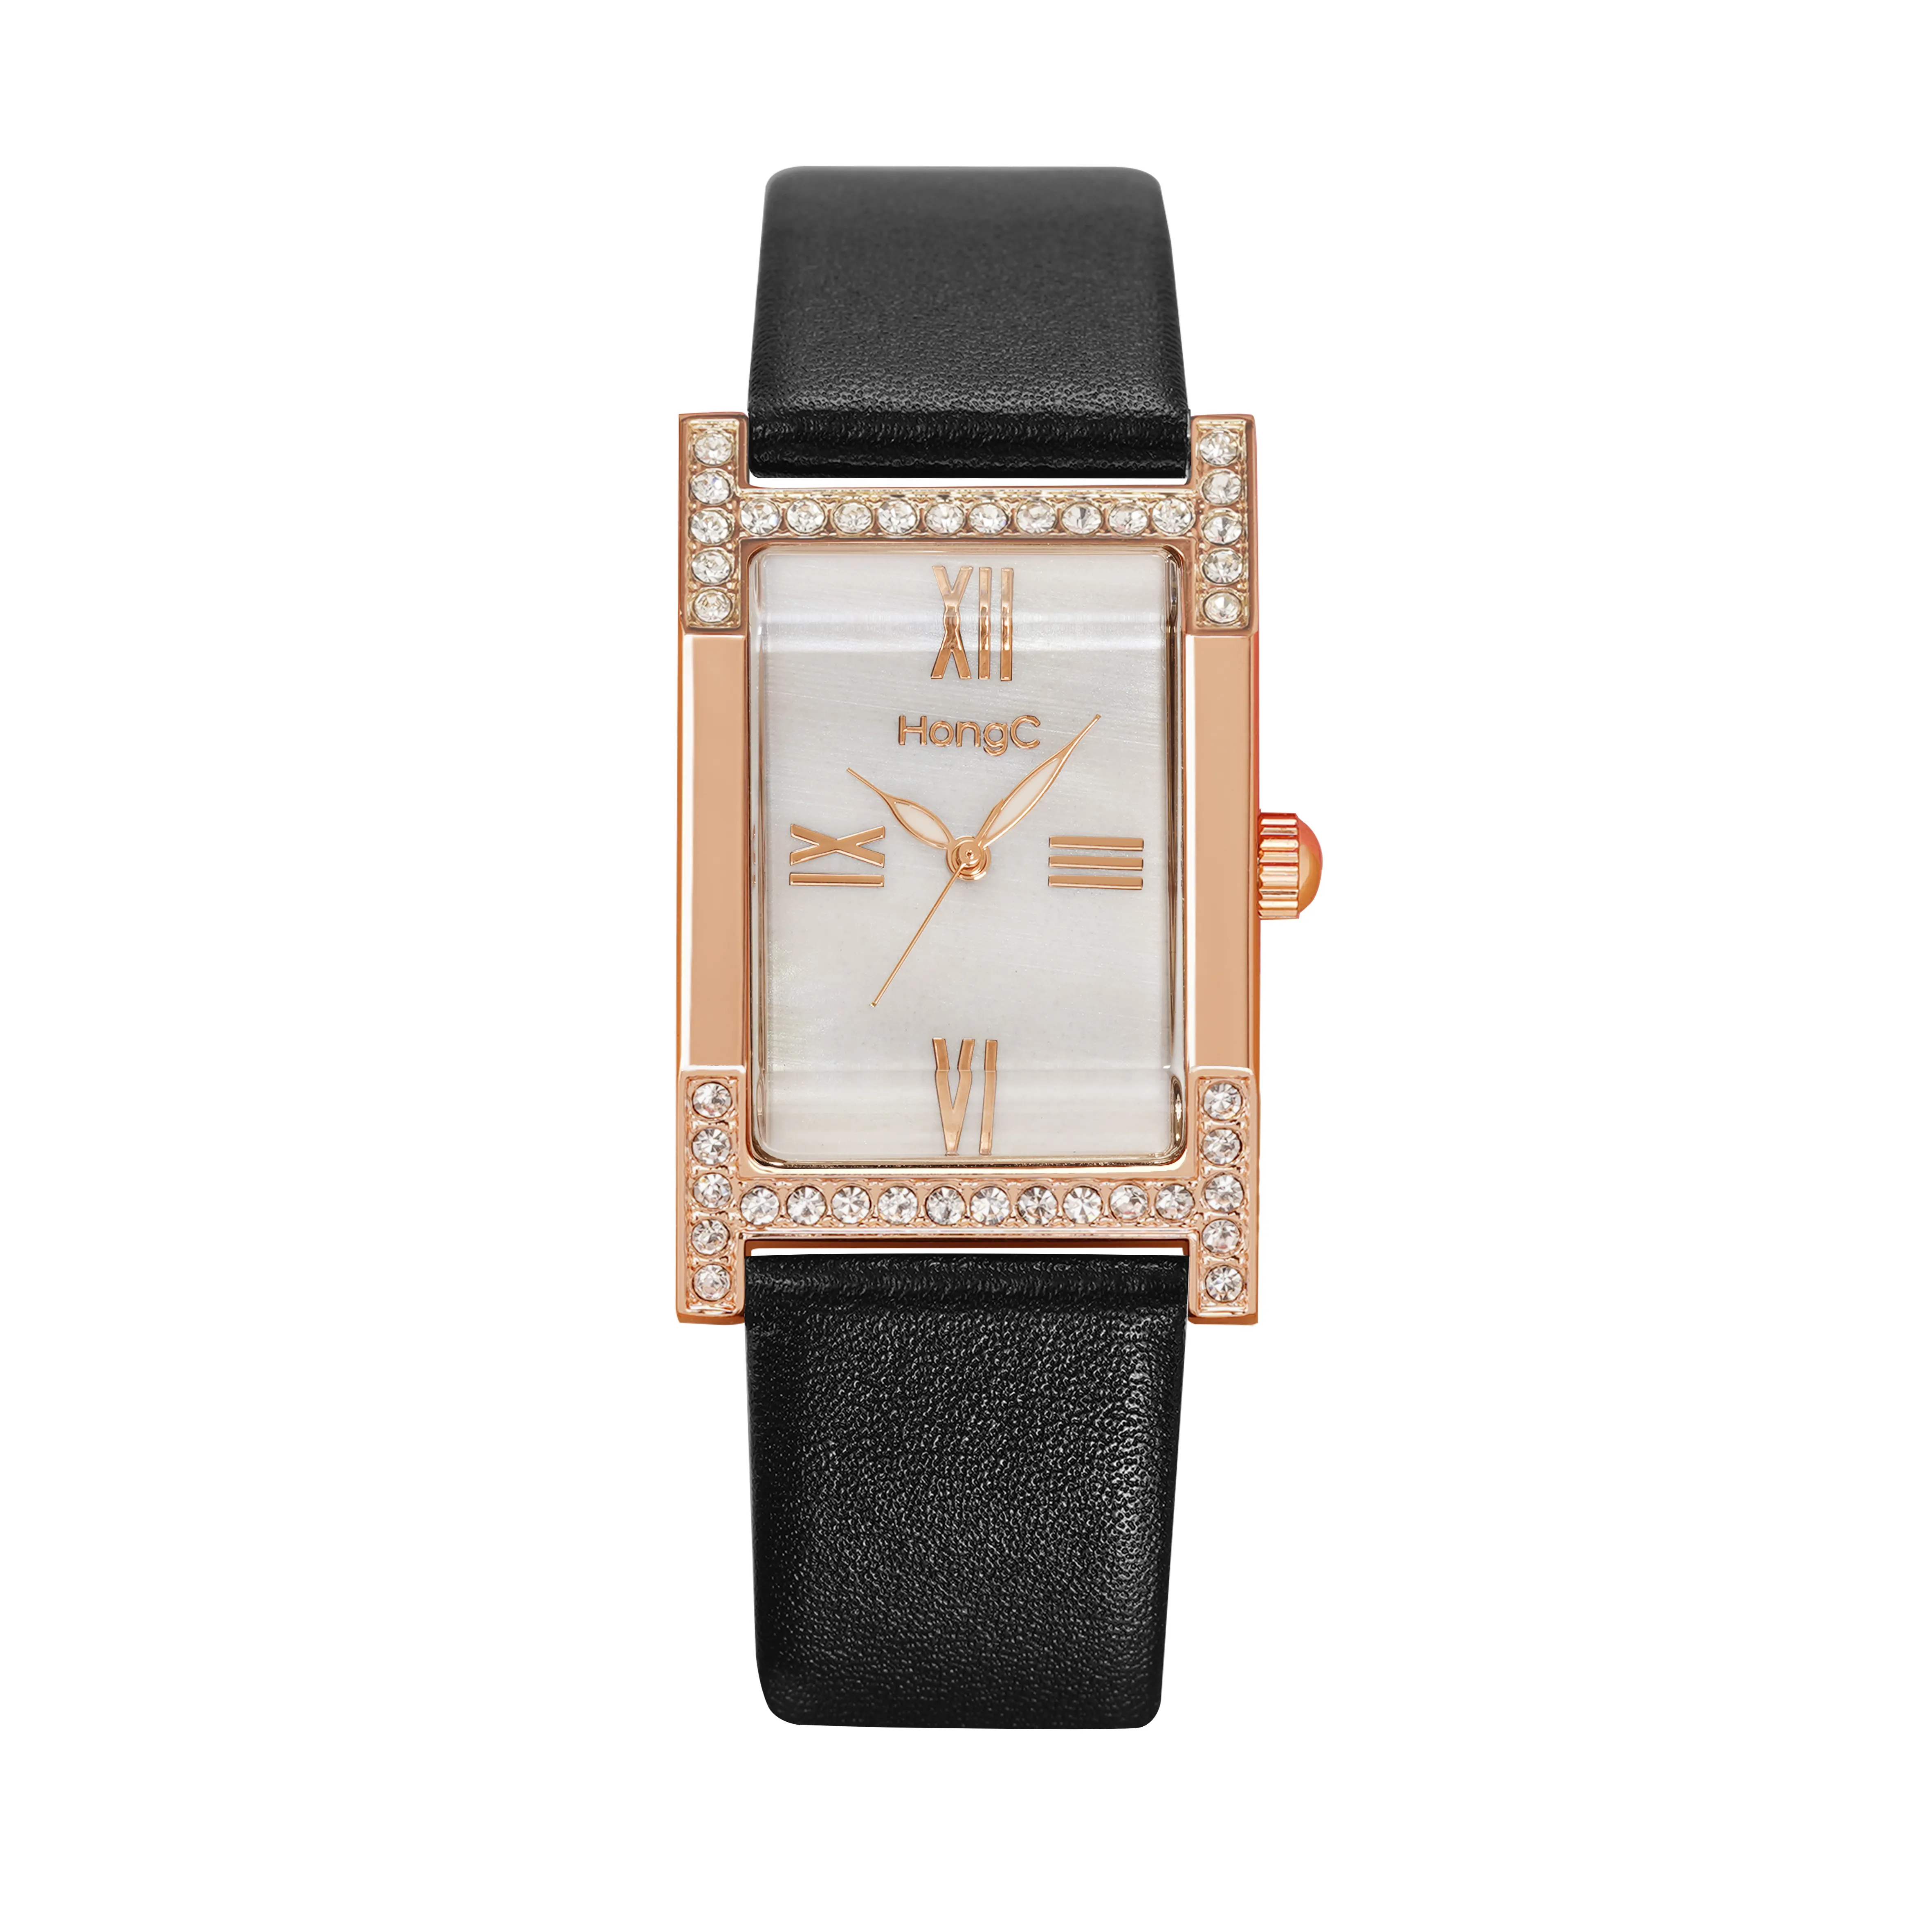 Yazole Hongc часы C001 красочные квадратные часы женские девушки красивый браслет наручные часы с магнитом часы минималистский Hongc